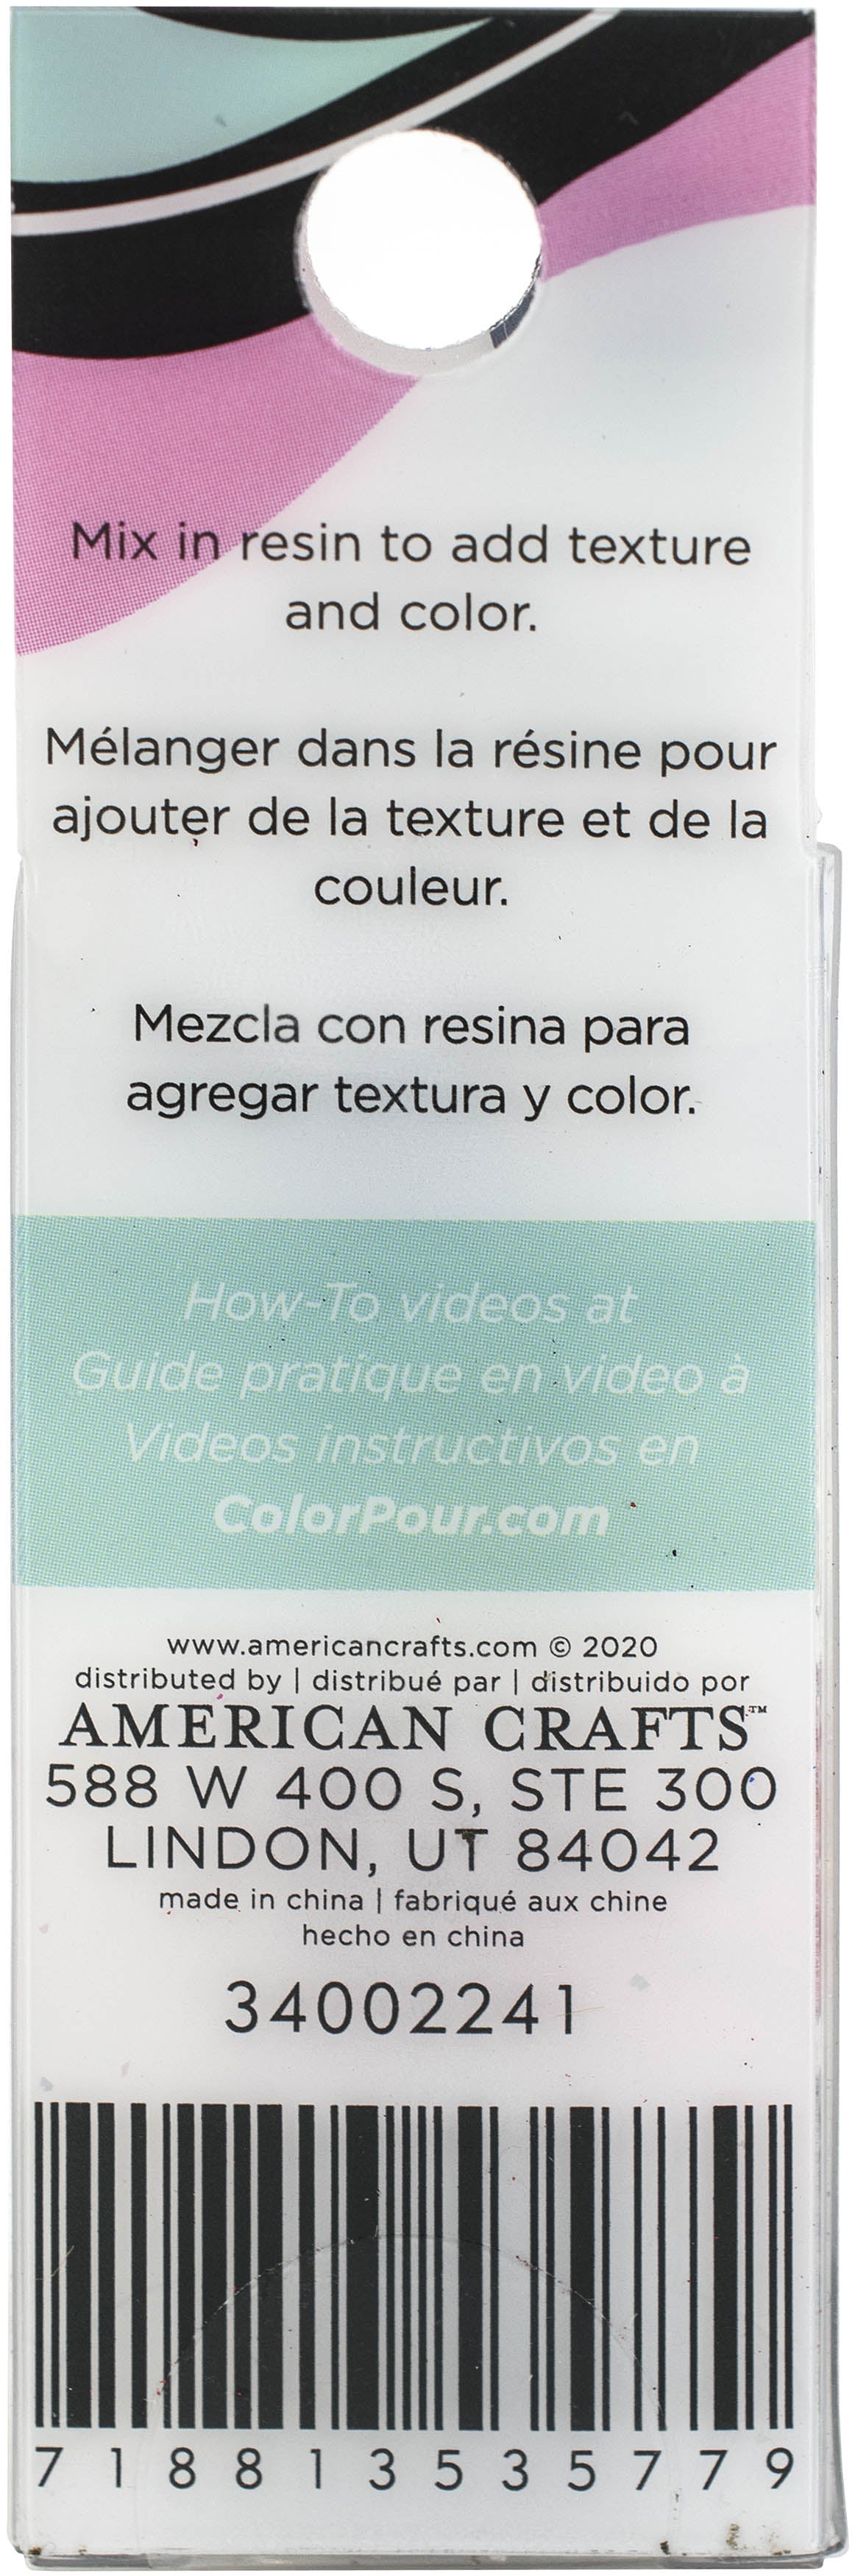 American Crafts Color Pour Resin Mix-Ins 4/Pkg -Reversible Foil Flakes